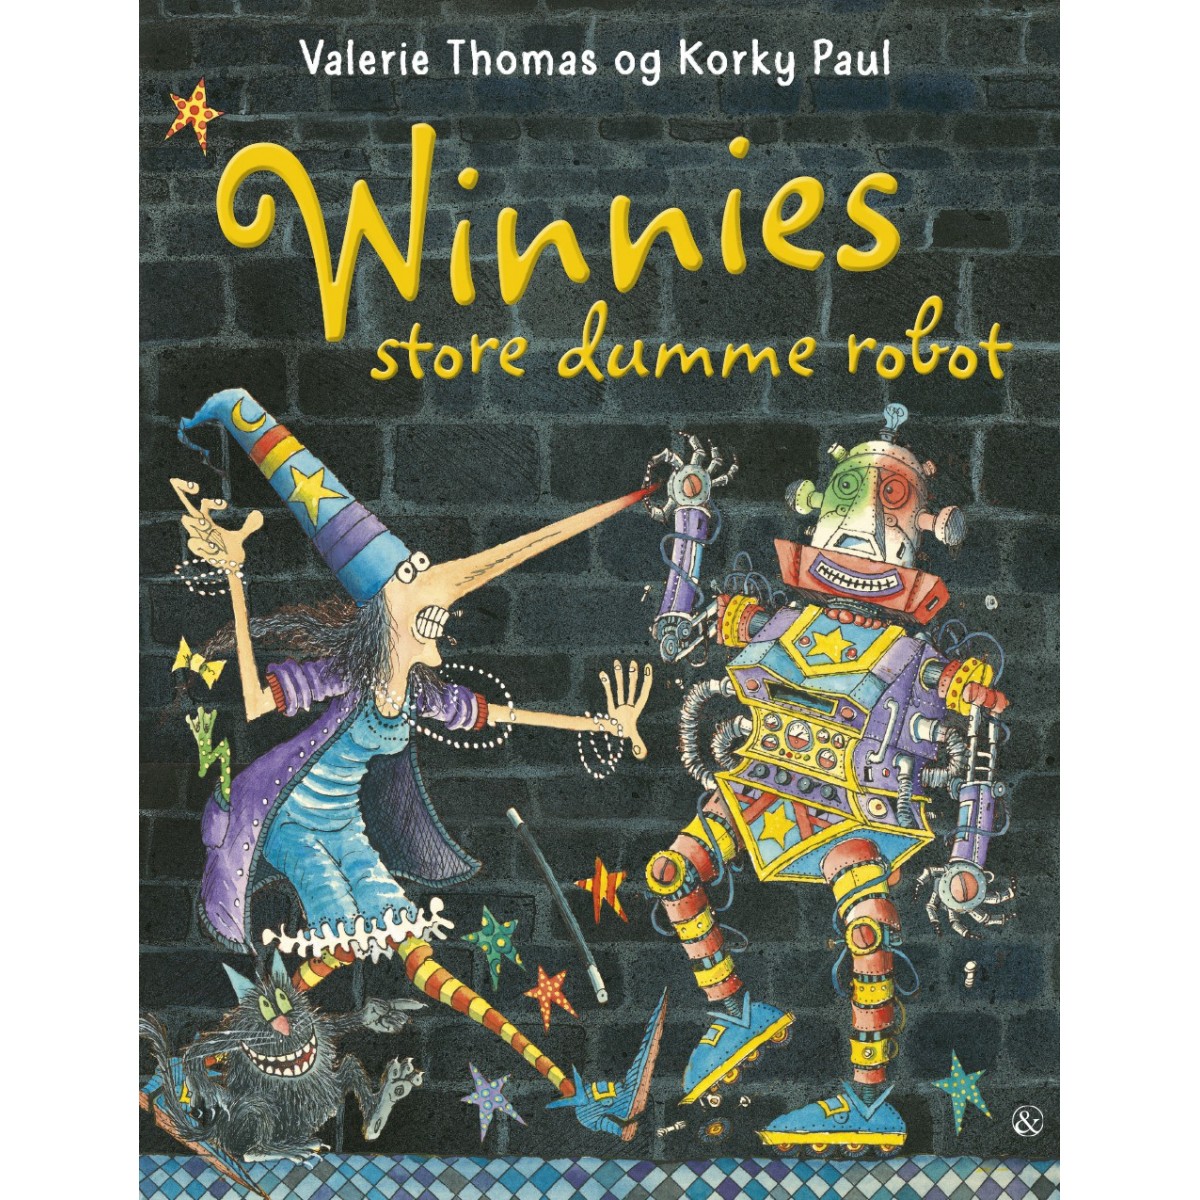 Valerie Thomas og Korky Paul: Winnies dumme robot